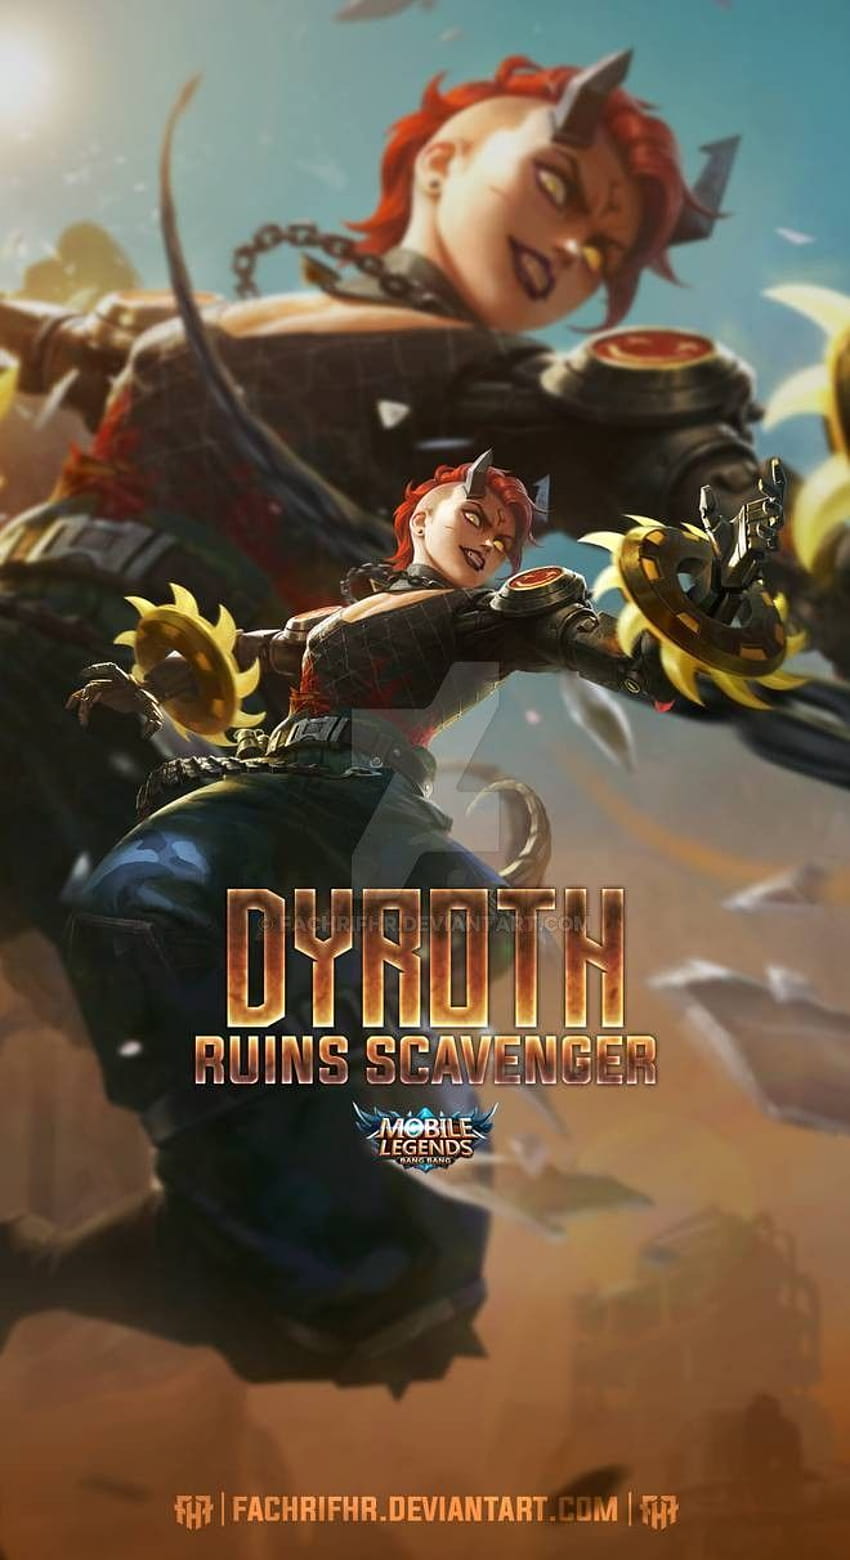 Dyroth Ruins Scavenger por FachriFHR en 2021, logo mobile legends 2021 fondo de pantalla del teléfono